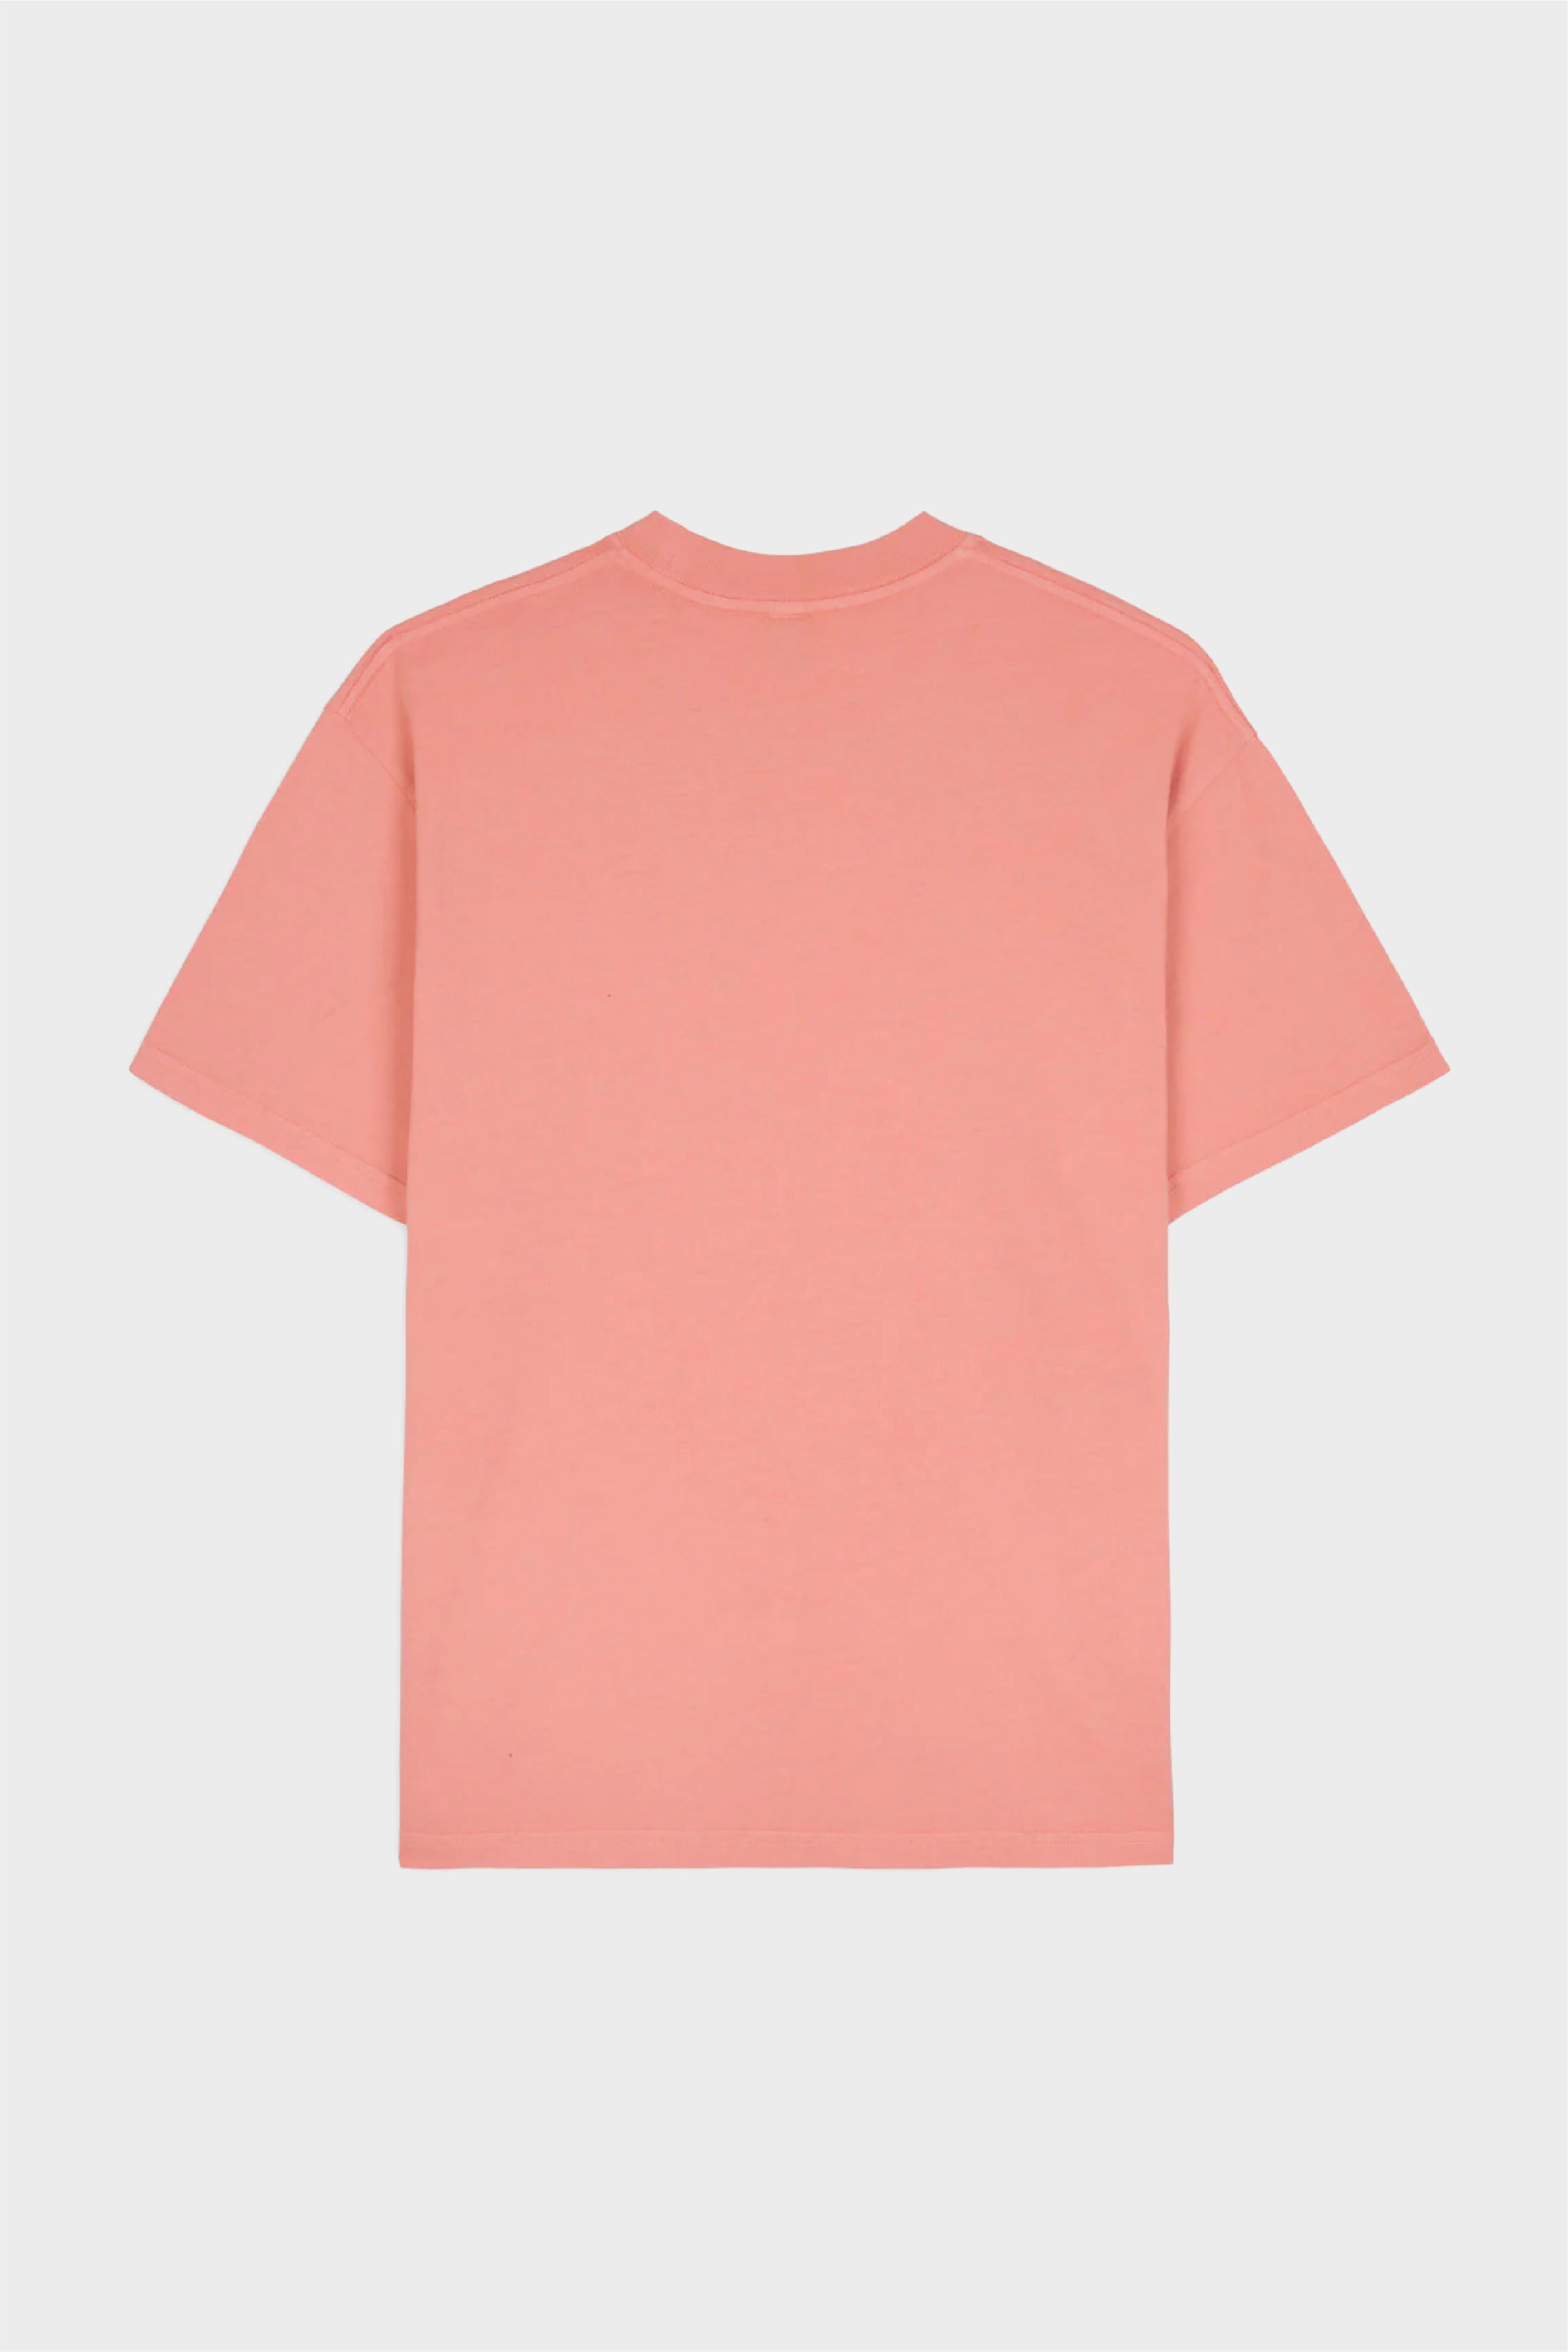 Selectshop FRAME - BRAIN DEAD Pastoral Encounters T-Shirt T-Shirts Concept Store Dubai